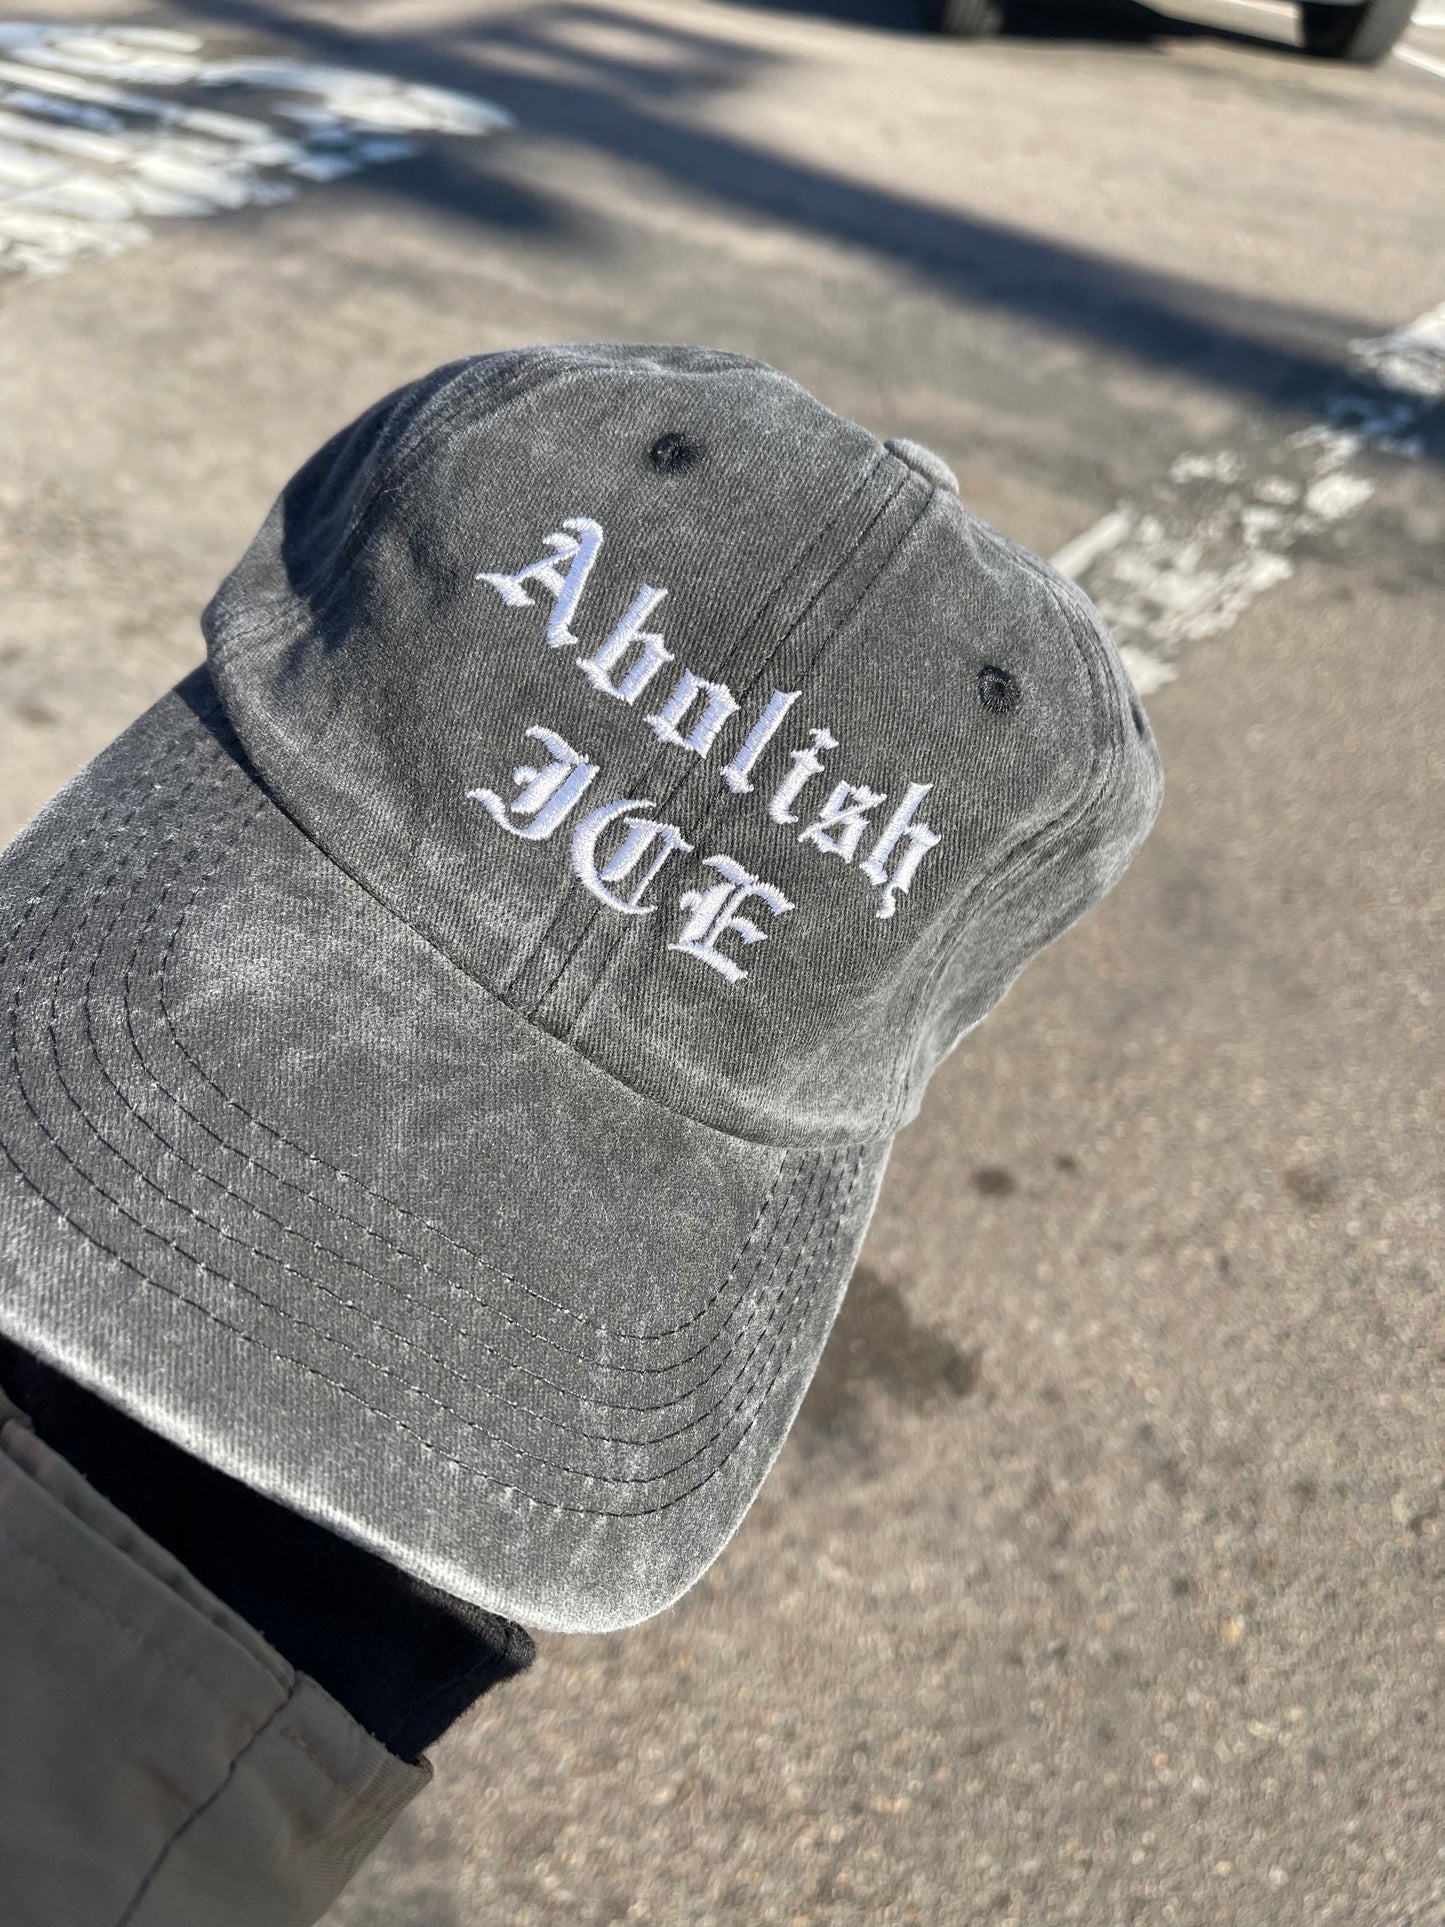 Abolish ICE Hat